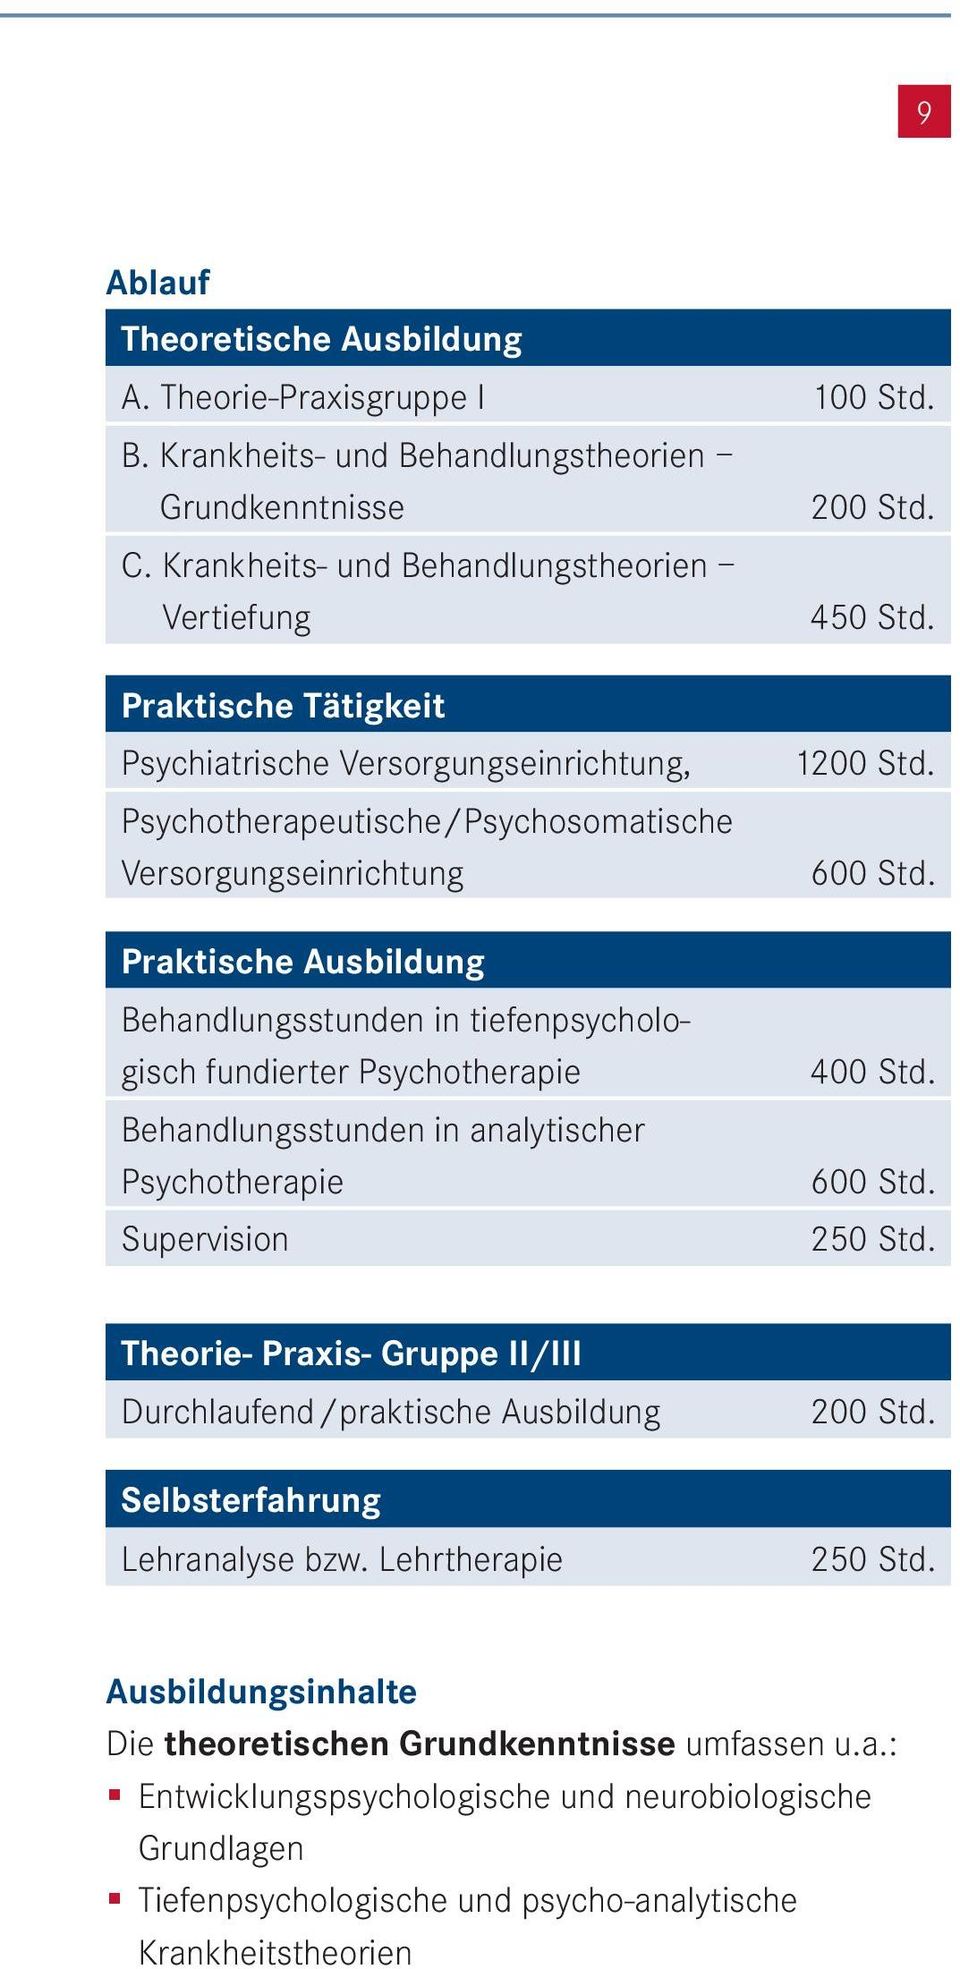 Psychotherapie Behandlungsstunden in analytischer Psychotherapie Supervision 1200 Std. 600 Std. 400 Std. 600 Std. 250 Std.